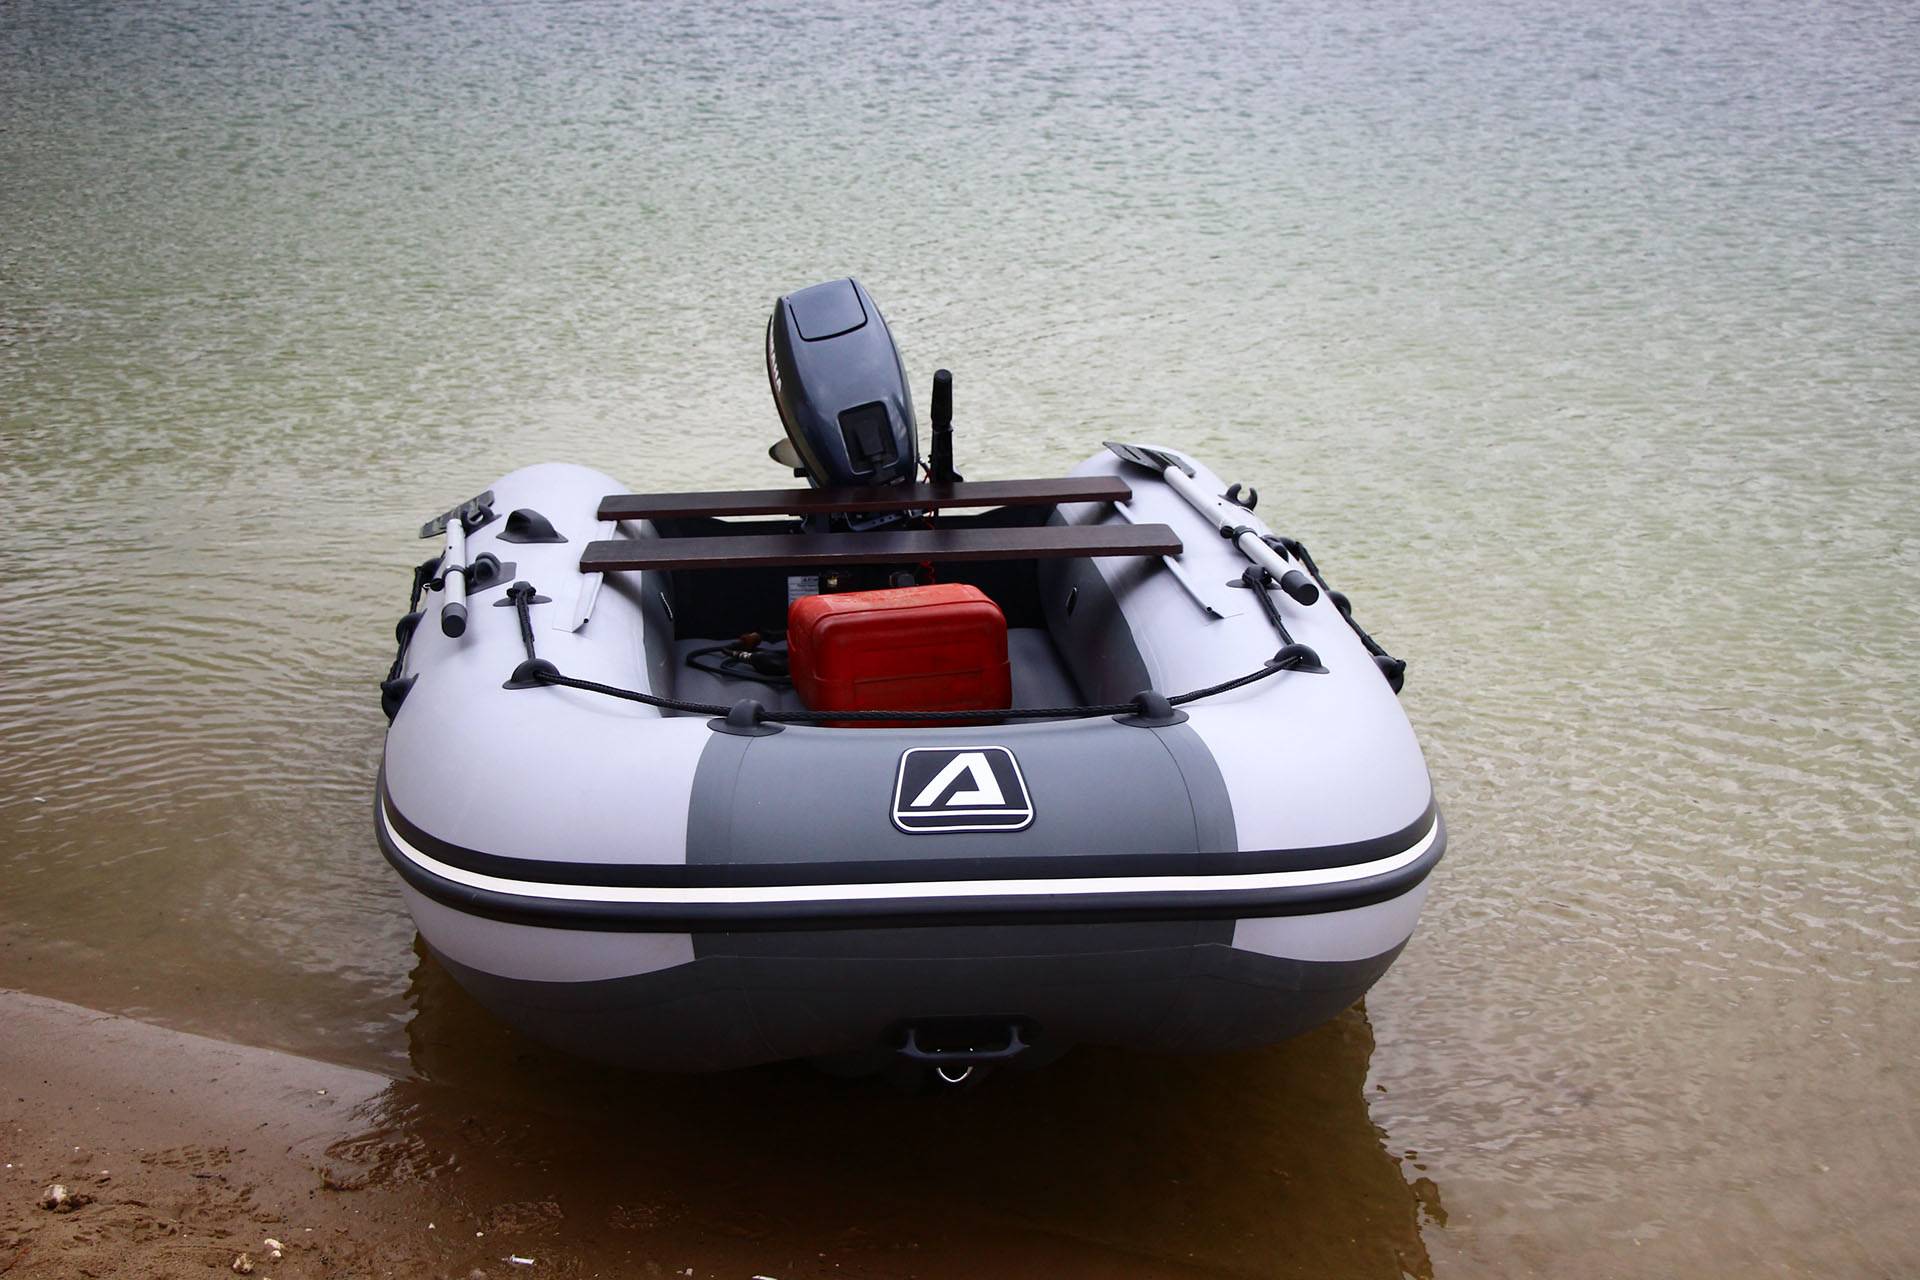 Лодки азимут: отзывы, популярные модели с нднд (380t, 400t)